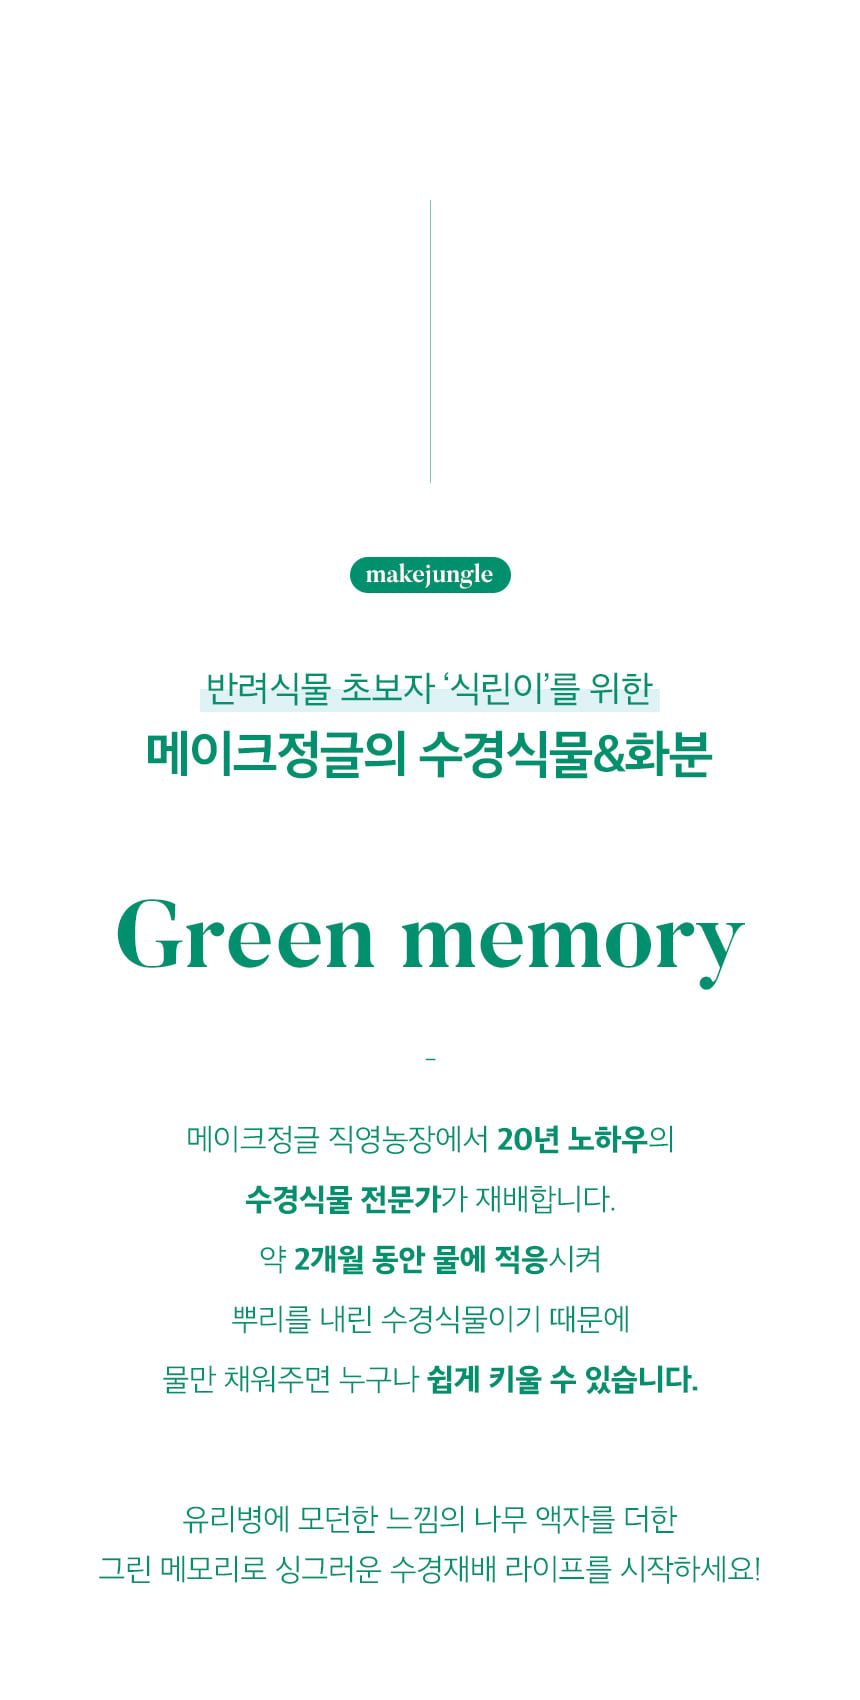 green_memory_02.jpg